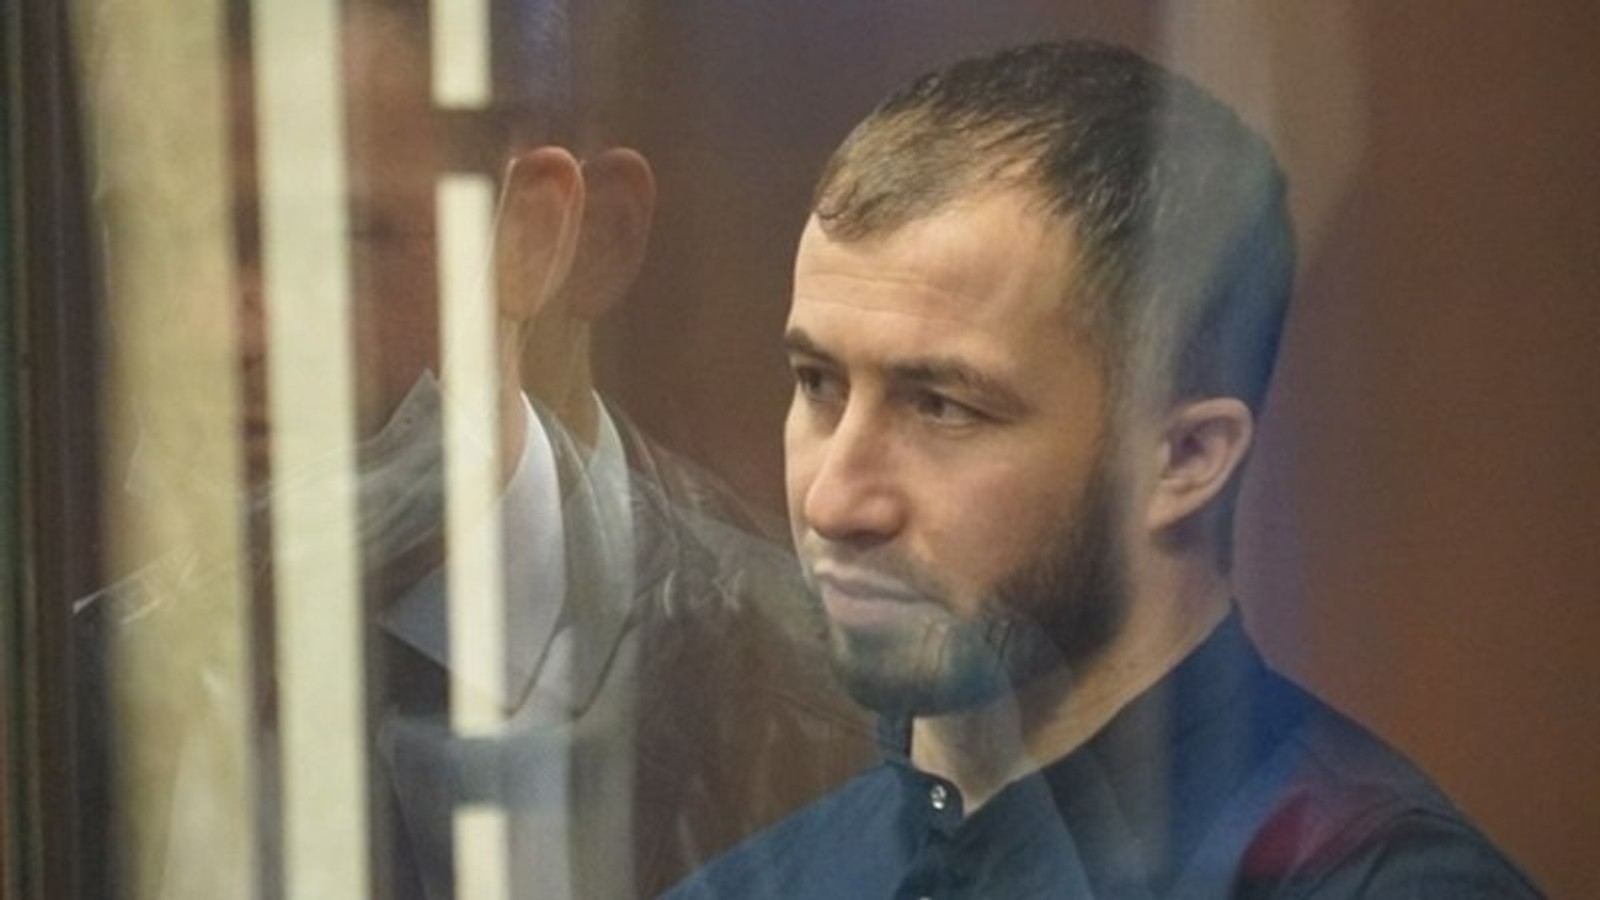 Обвинение запросило 20 лет тюрьмы для крымского активиста, фигуранта дела «Хизб ут-Тахрир» Исмета Ибрагимова